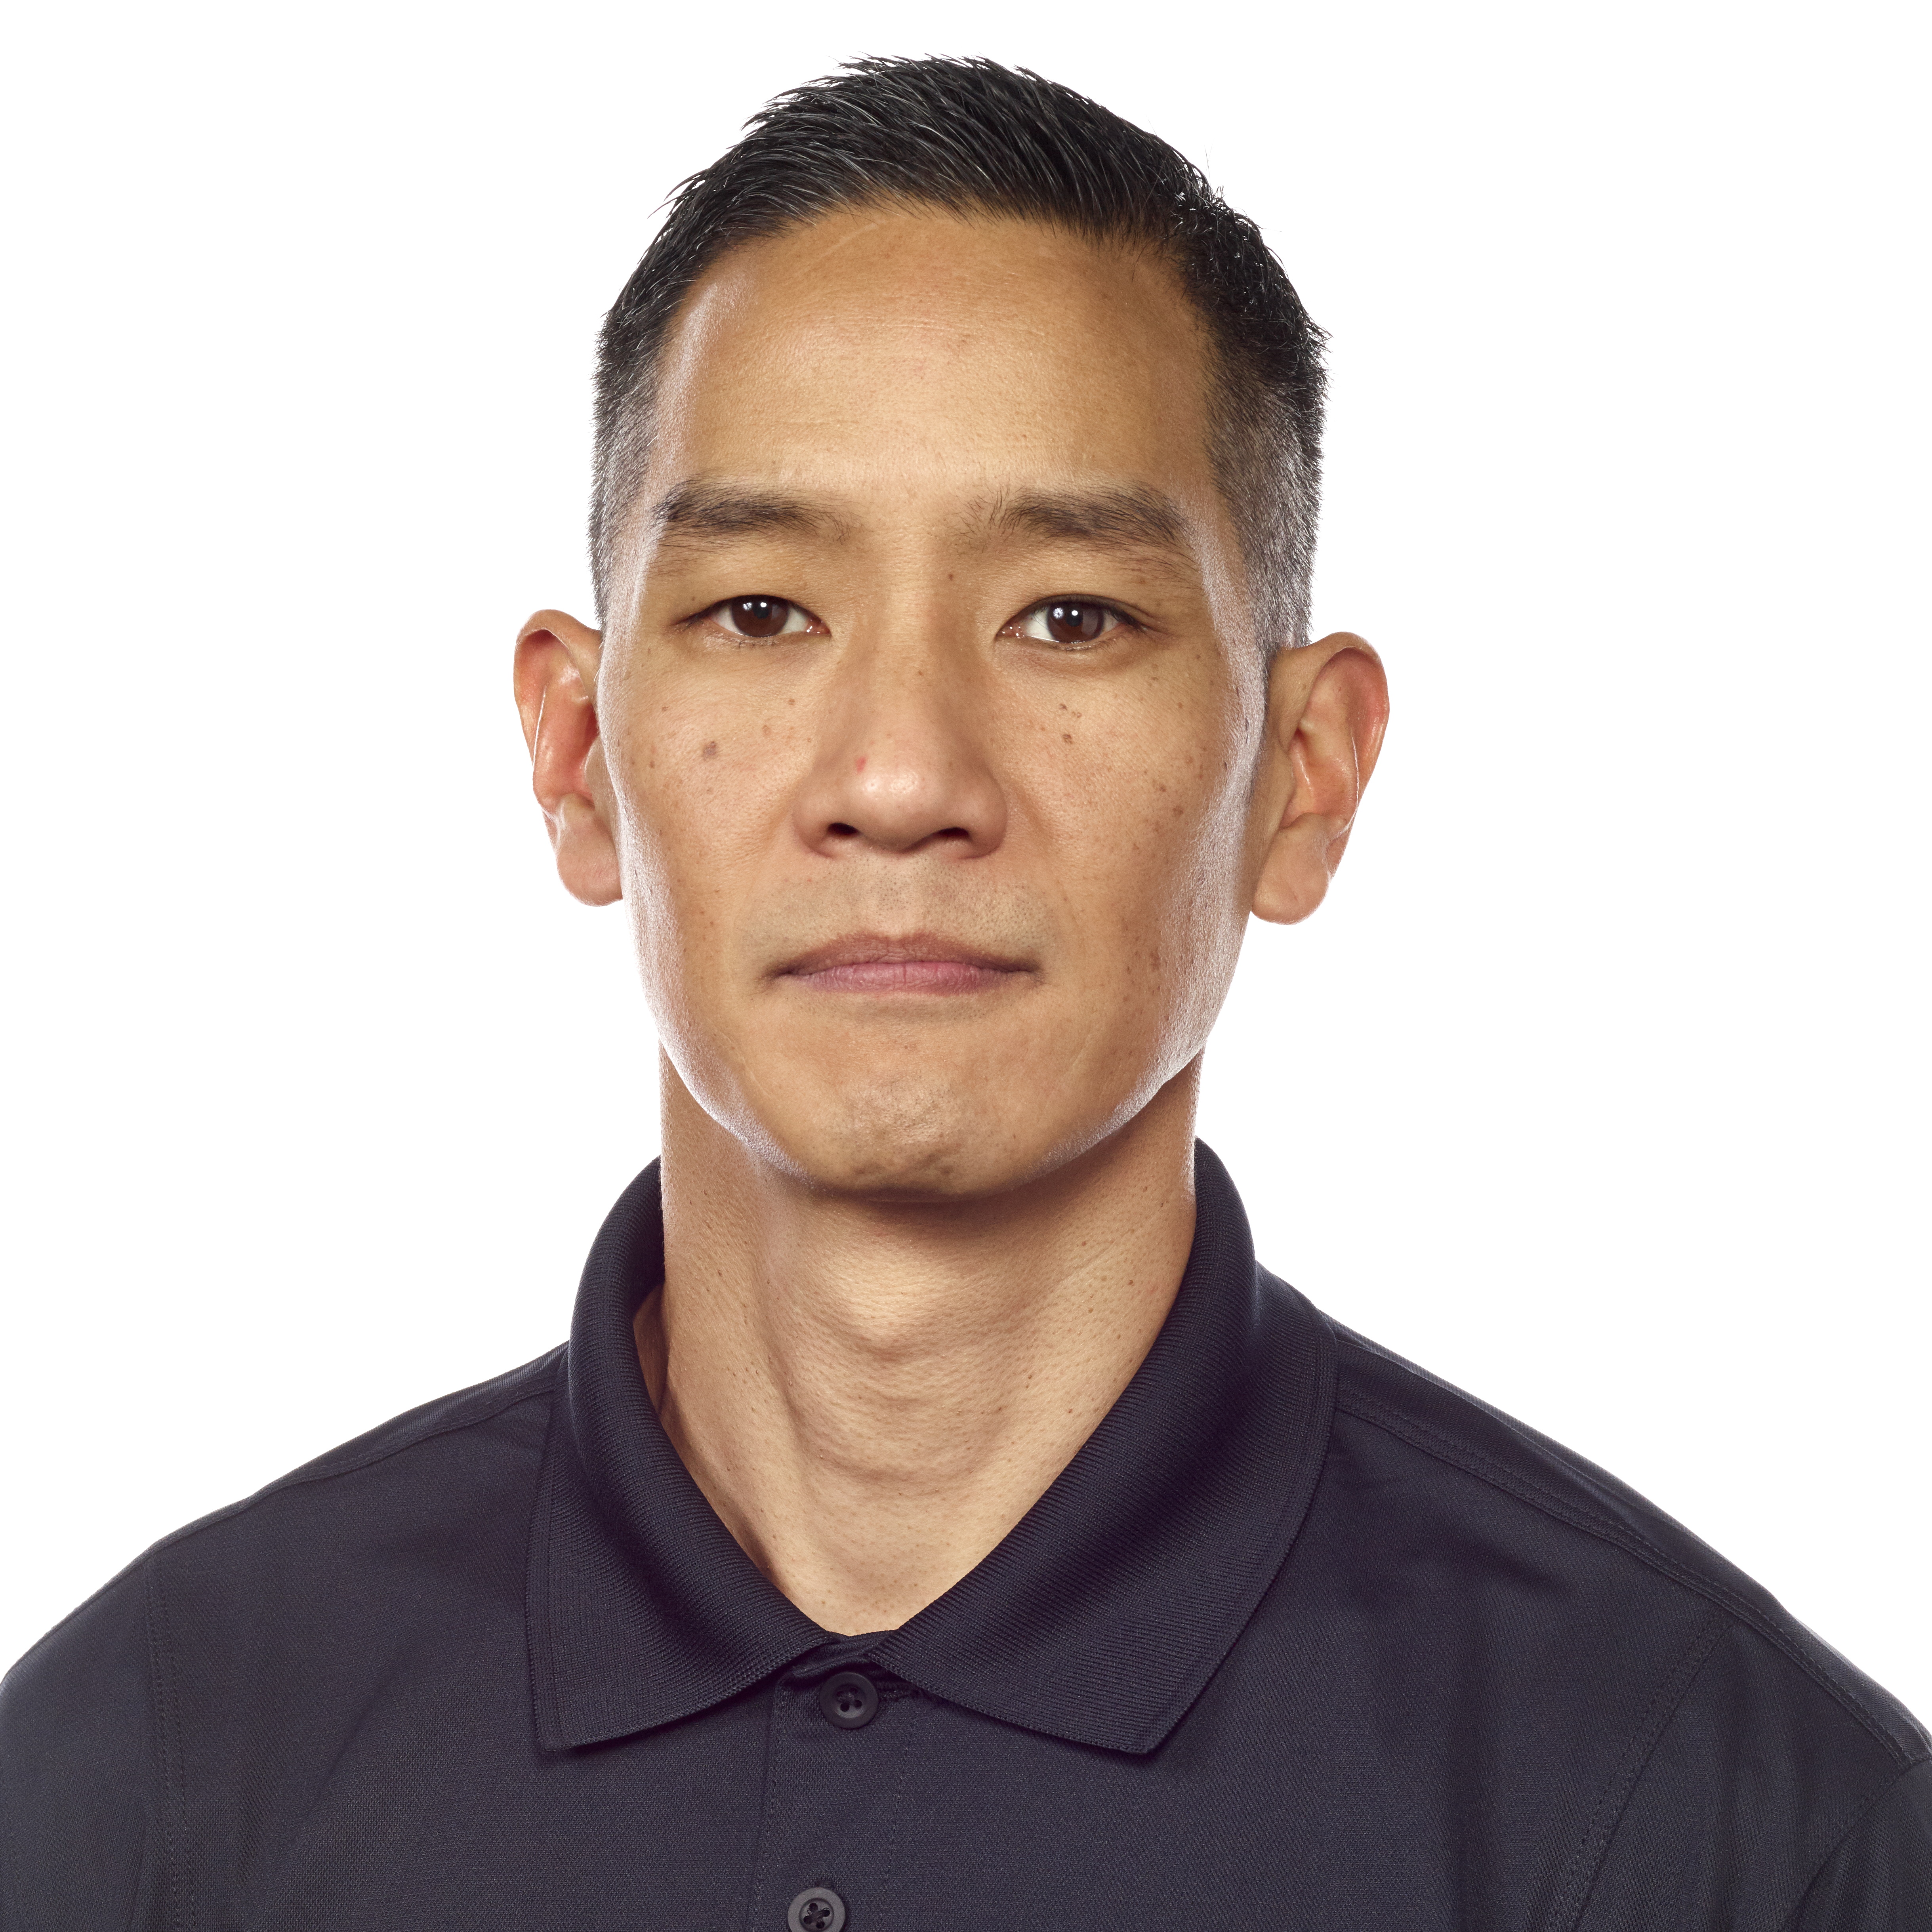 John Kim's FaceShot